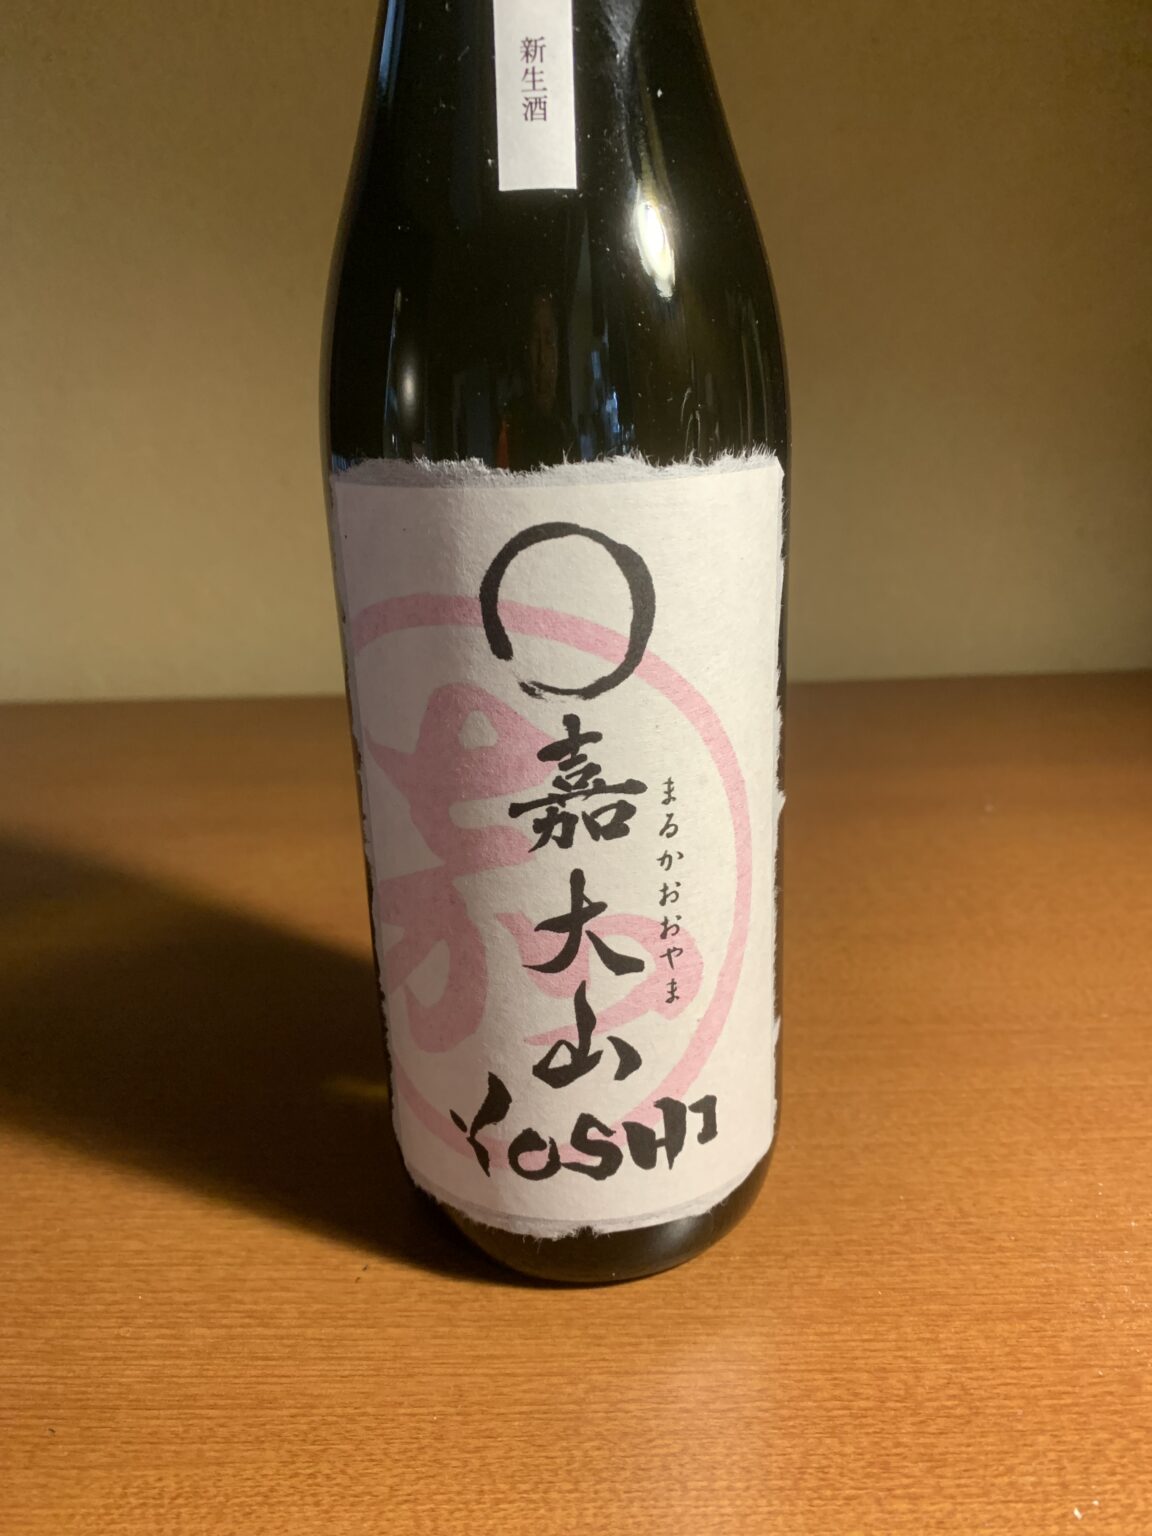 山形の日本酒『○嘉大山Yoshi』は貴醸酒のような濃淳な味わい